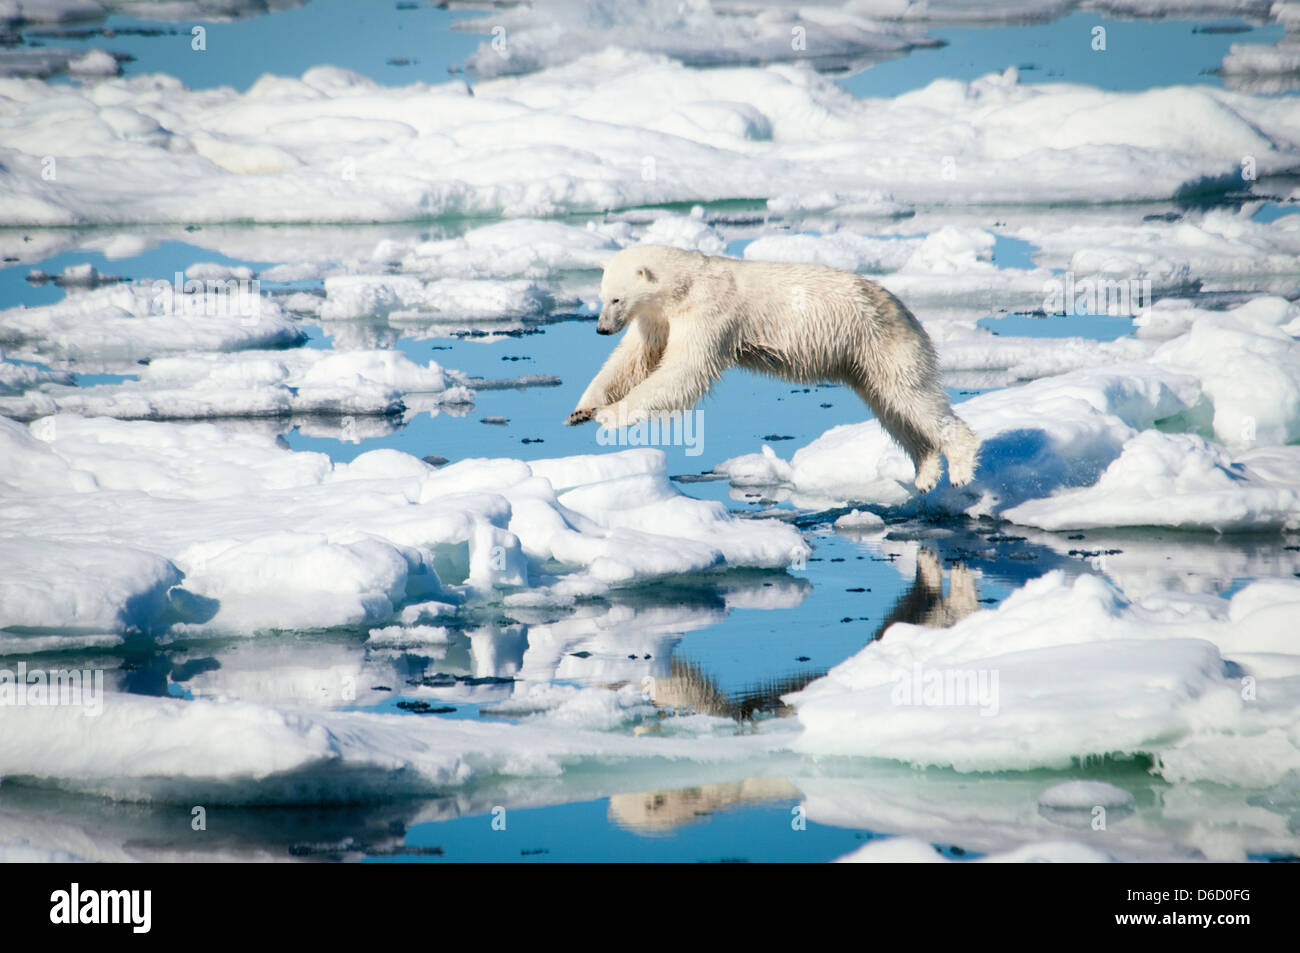 L'ours blanc, Ursus maritimus, sautant par-dessus de la fonte des glaces dans l'Olgastretet la banquise, archipel du Svalbard, Norvège Banque D'Images